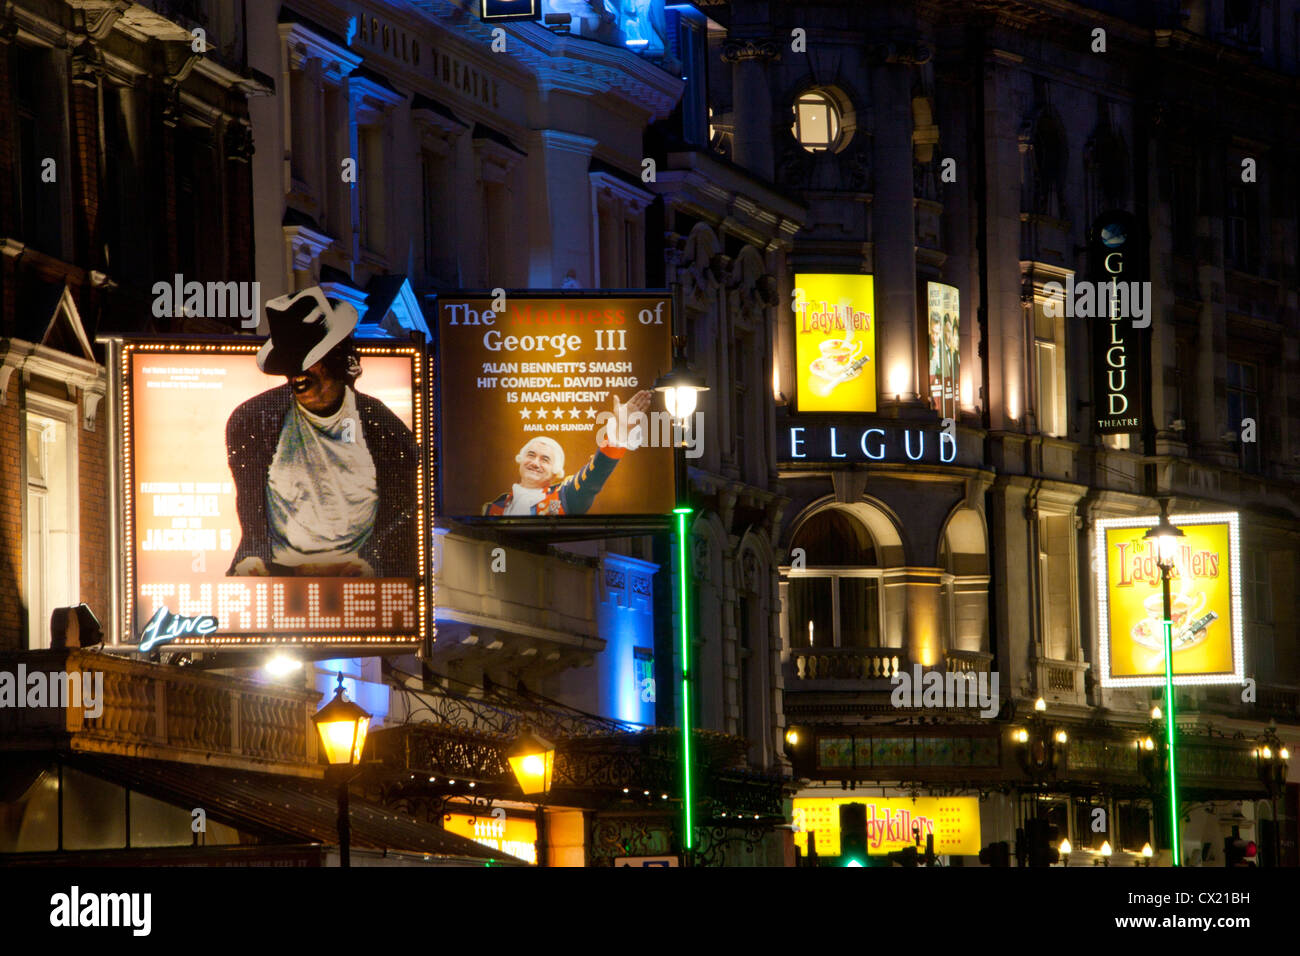 Close-up de panneaux sur Lyric, Apollo et Théâtres Gielgud la nuit Shaftesbury Avenue West End de Londres Angleterre Royaume-uni Theatreland Banque D'Images